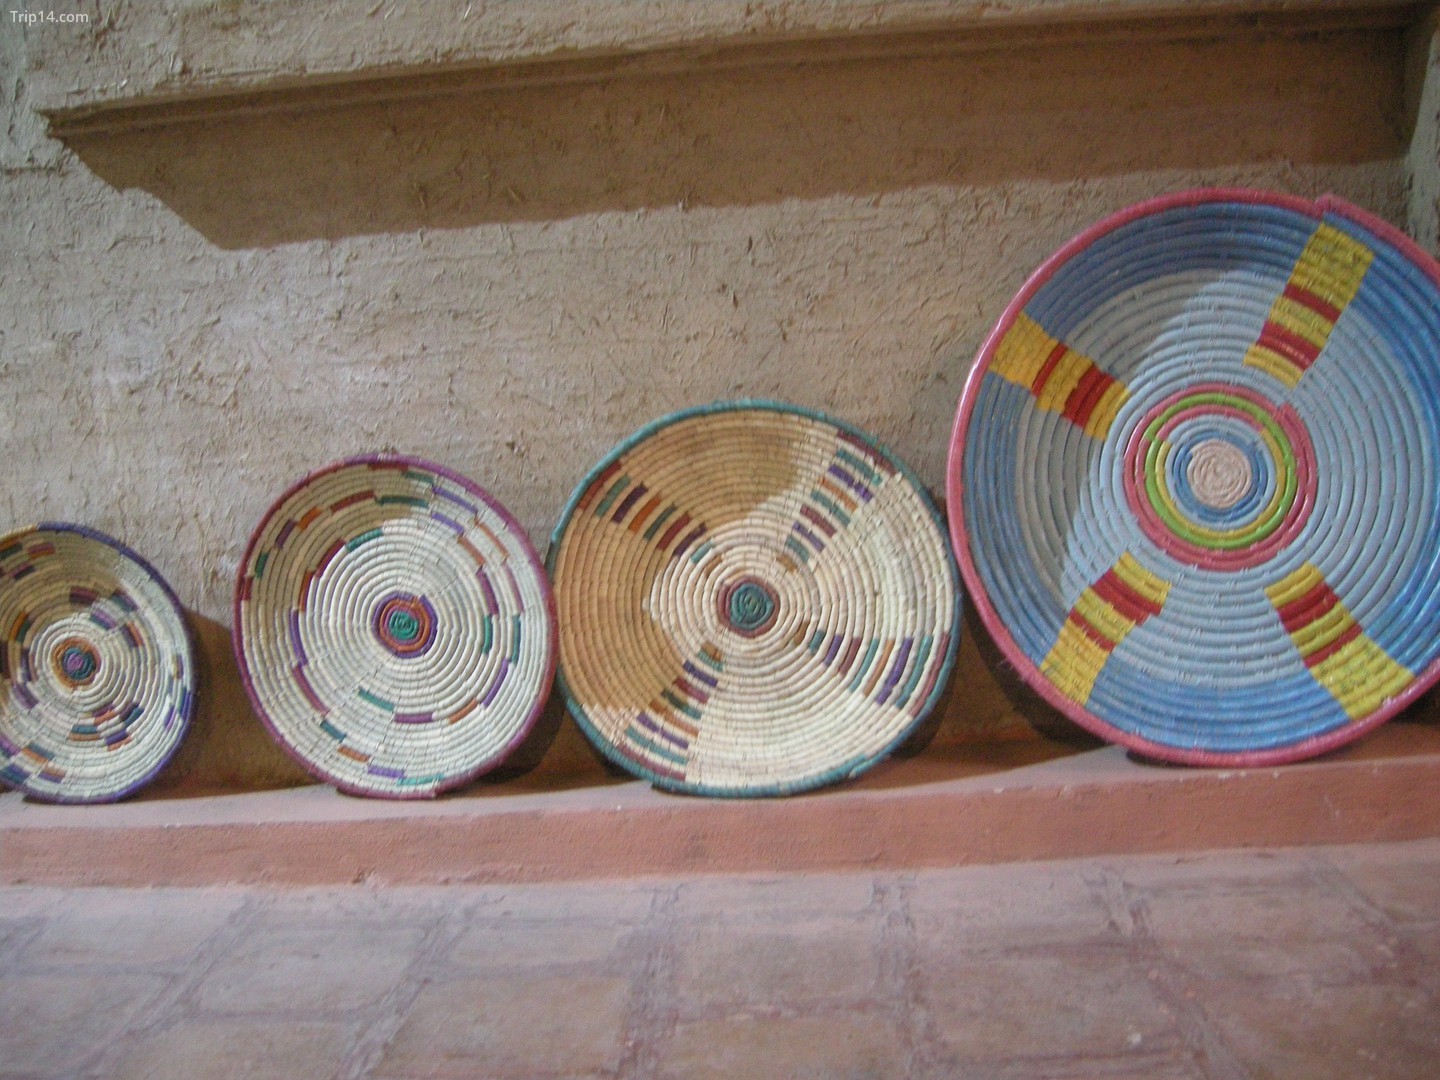  Nghề đan rổ truyền thống của Khuzestan   |   